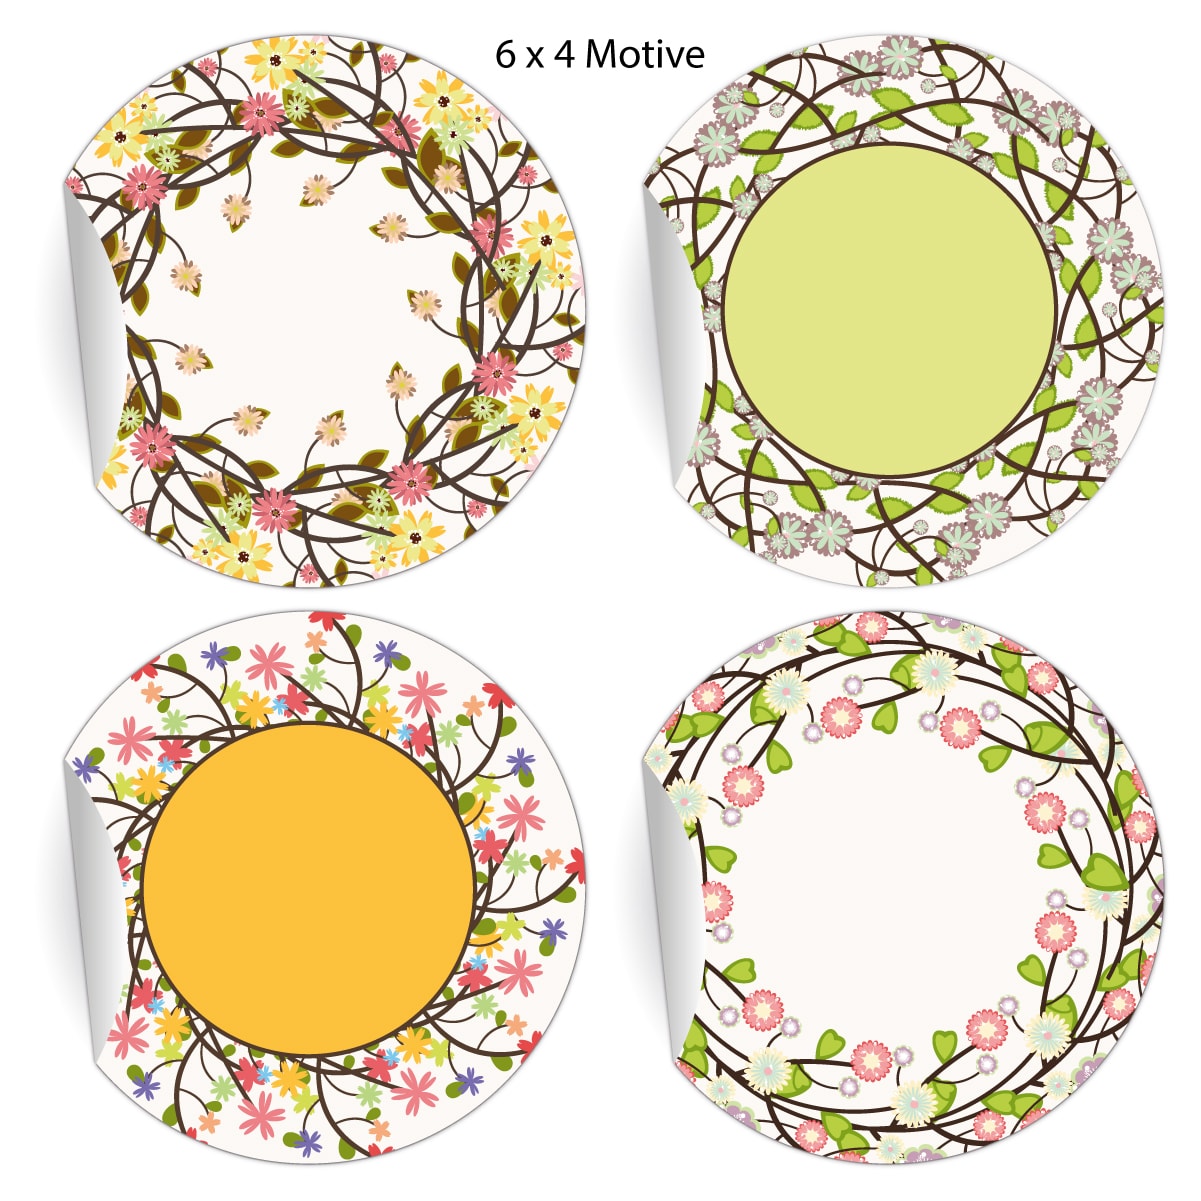 Kartenkaufrausch: elegante Aufkleber zum Beschriften aus unserer florale Papeterie in multicolor